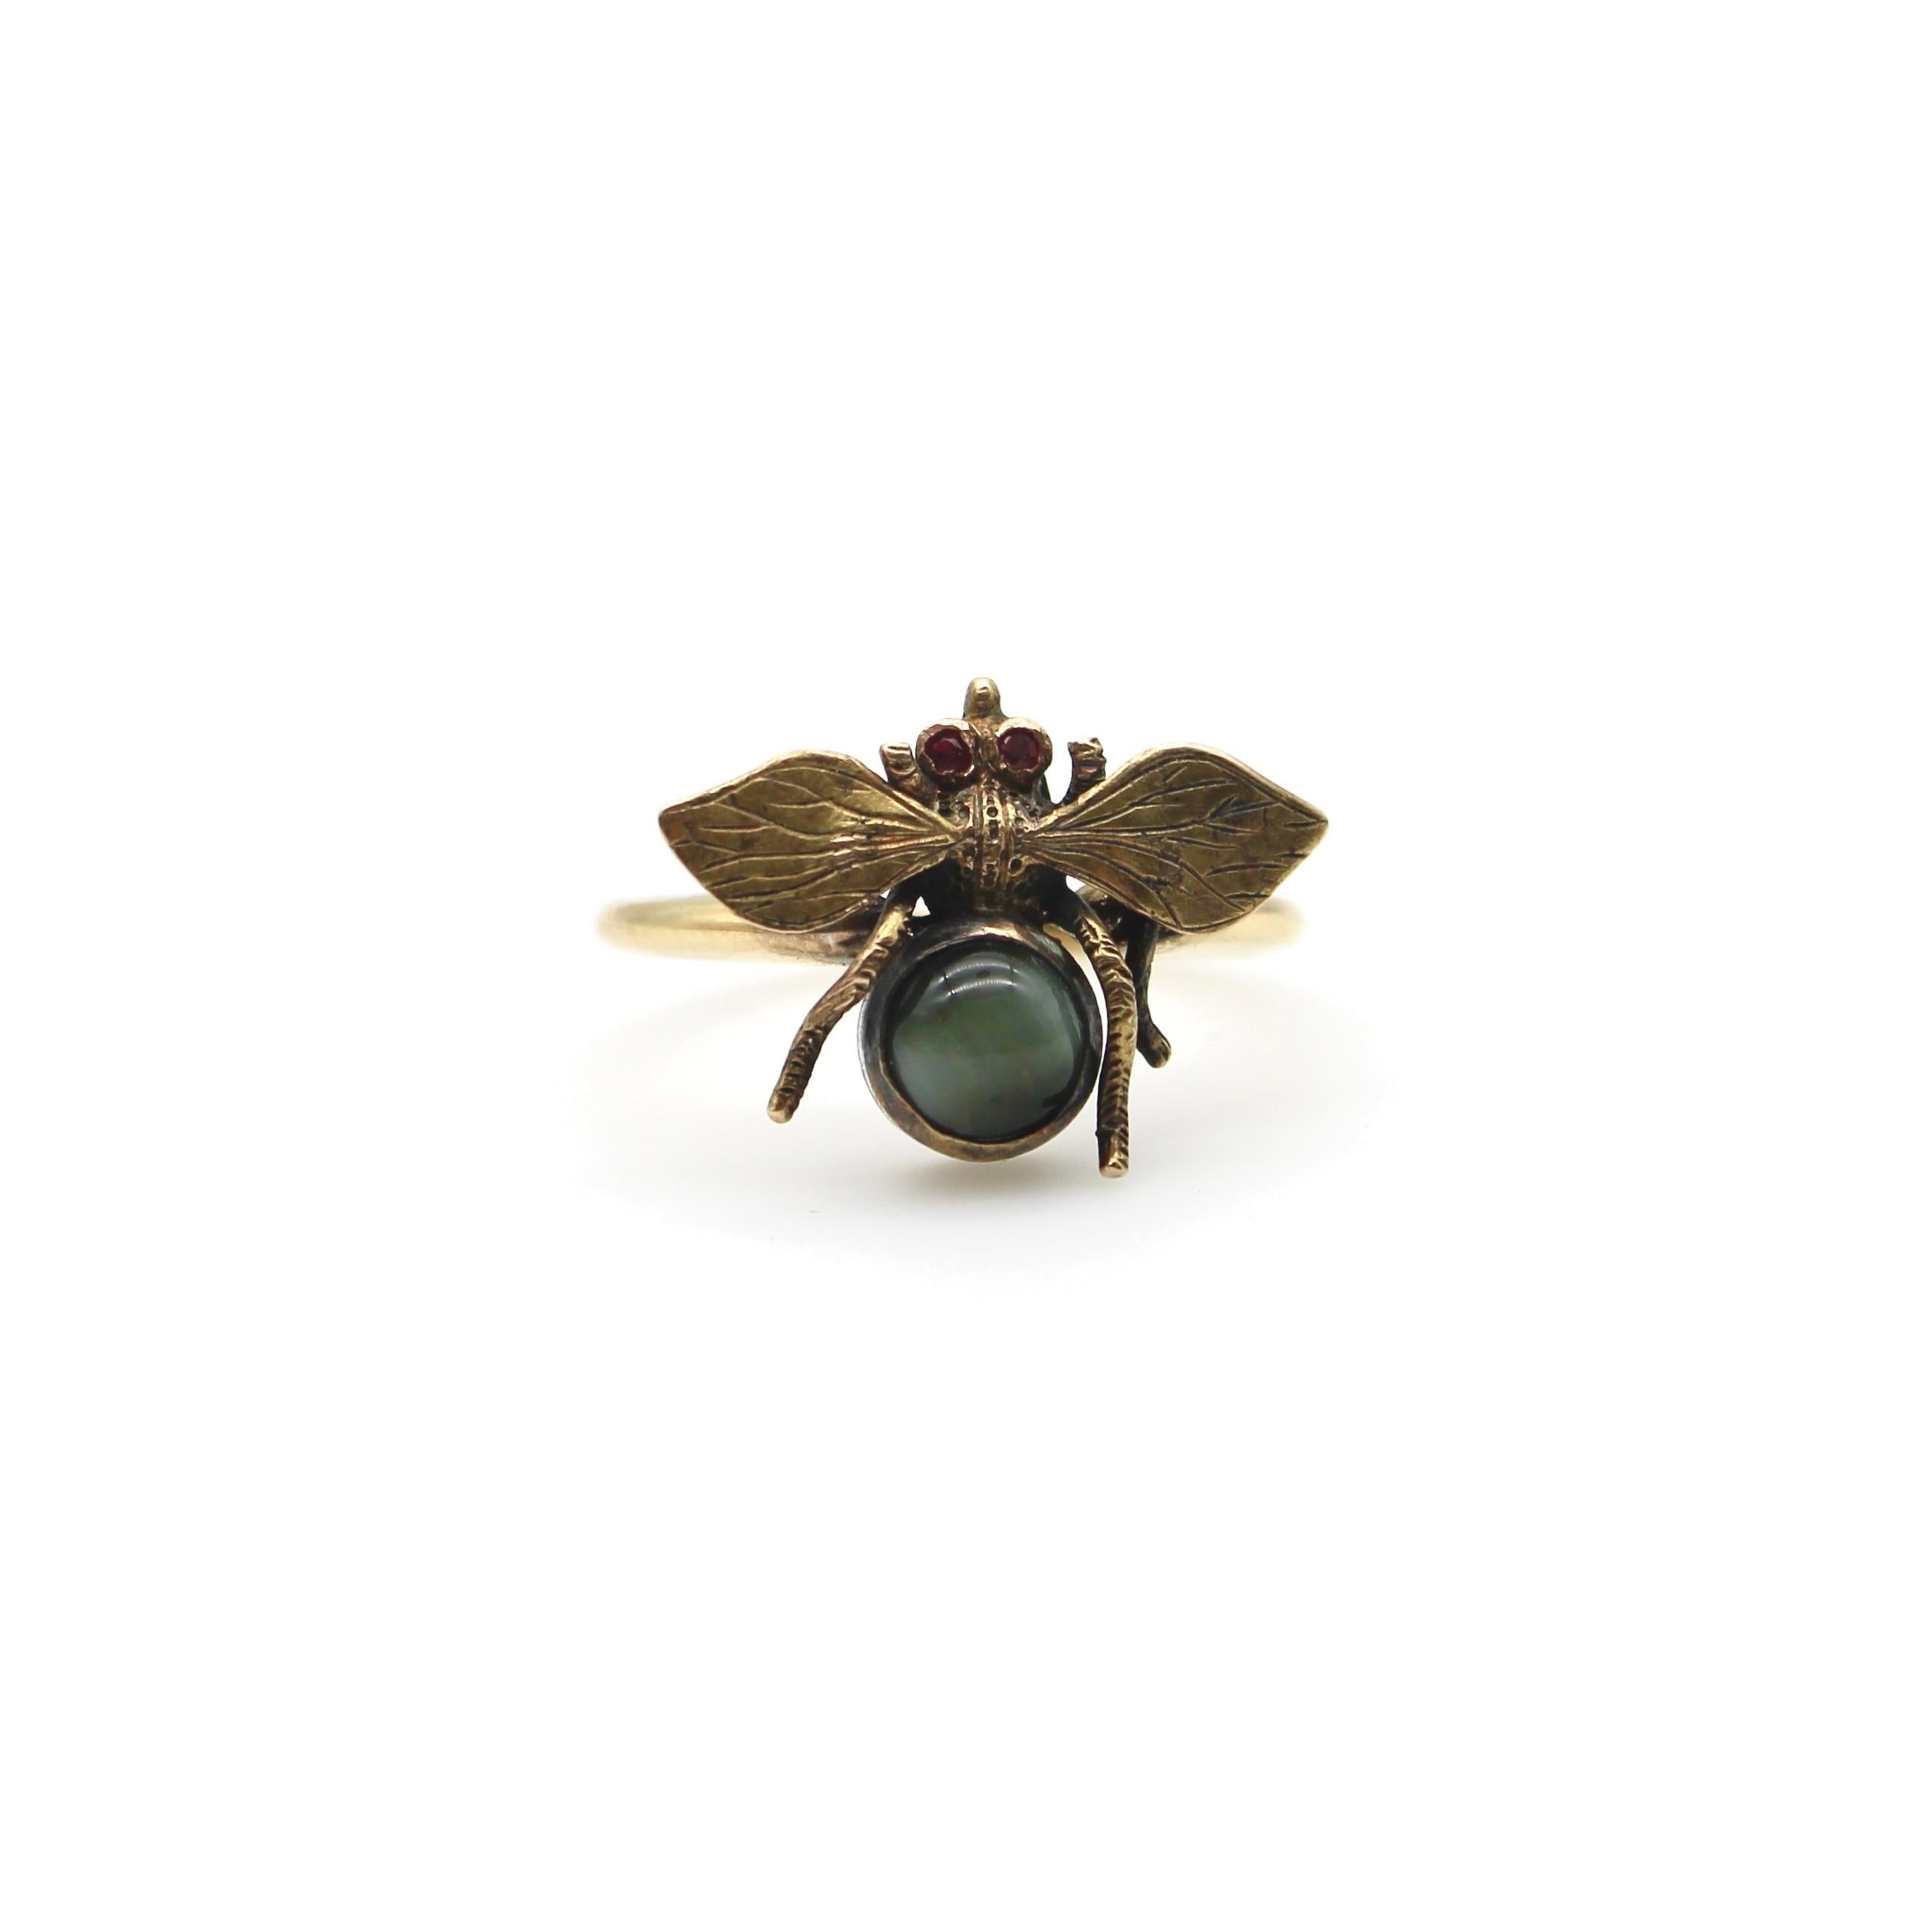 Une belle bague d'abeille de l'époque victorienne fabriquée à partir d'une épingle à nourrice. Les yeux sont sertis de rubis et le thorax est orné d'un œil de chat gris. Dans le langage symbolique et sentimental de l'ère victorienne, l'abeille est